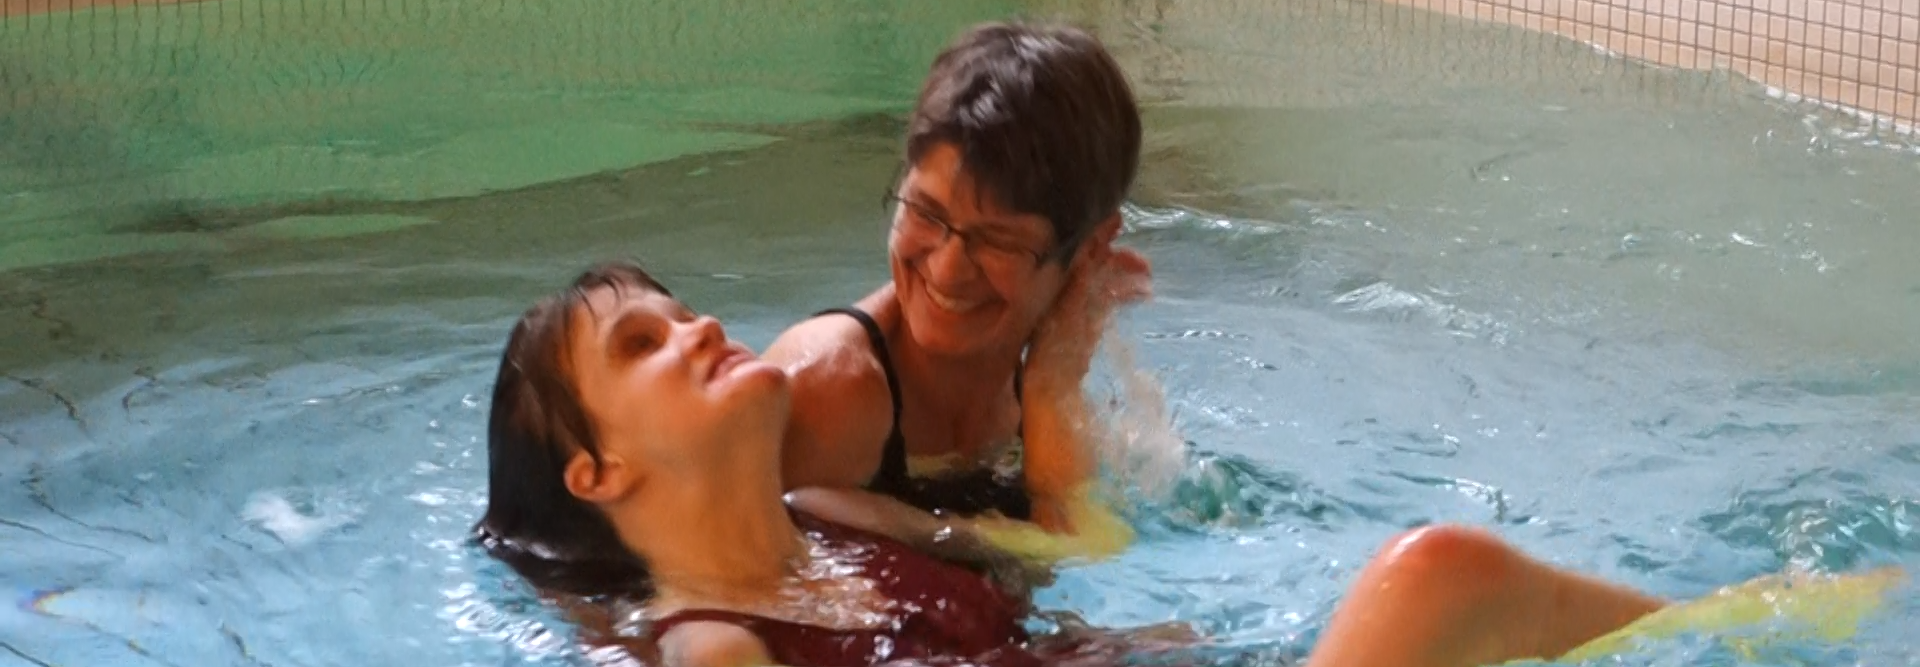 Una giovane donna nuota sulla schiena, sostenuta dal fisioterapista, nella piscina terapeutica di Tanne. La scena è caratterizzata da un'attenzione calorosa e consapevole tra le due donne.